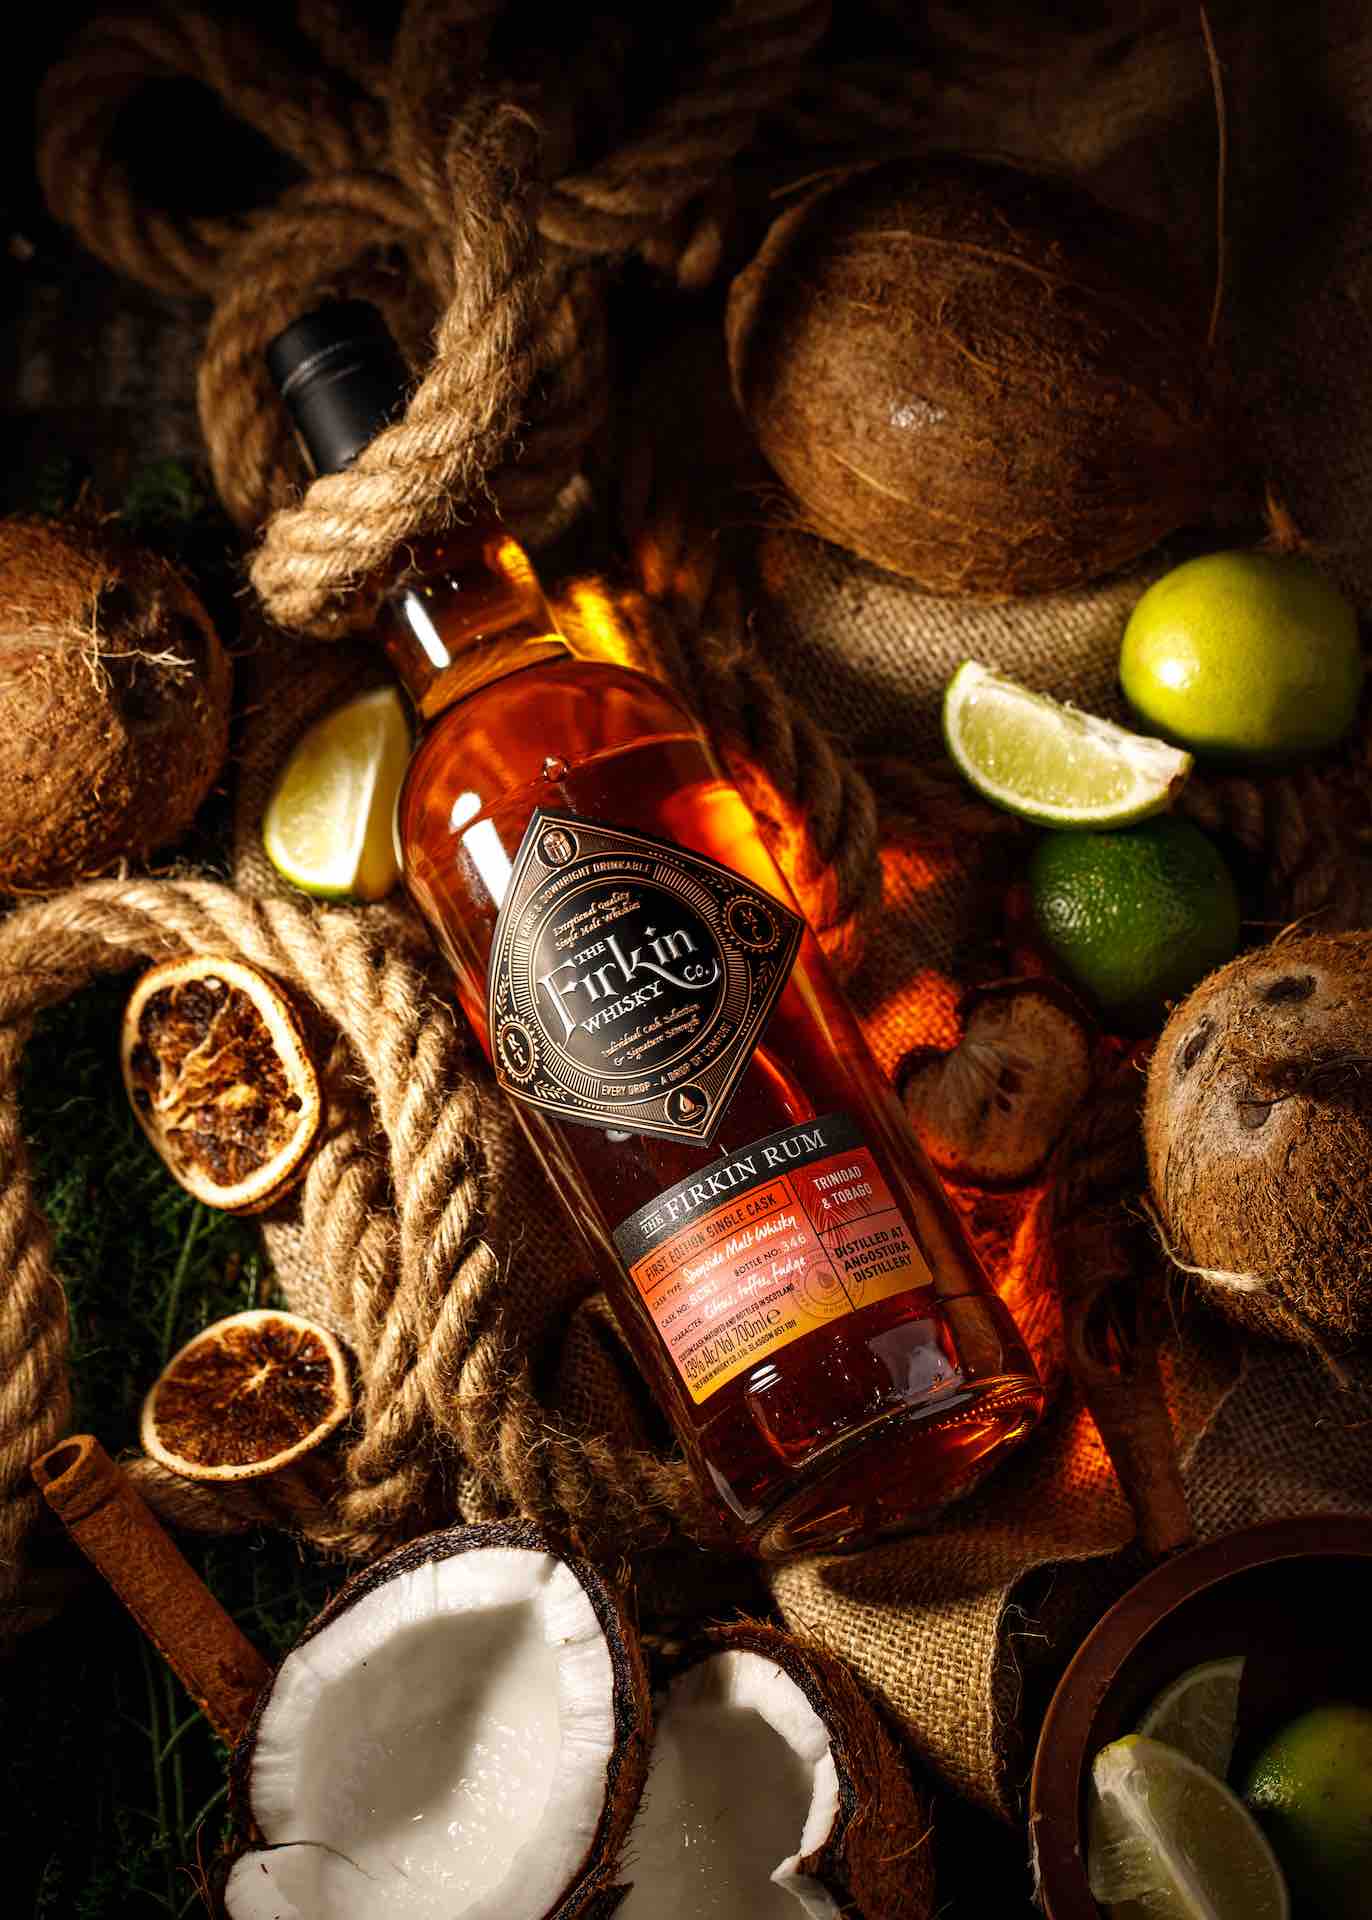 Firkin Rum in Custom Speyside Scotch Cask